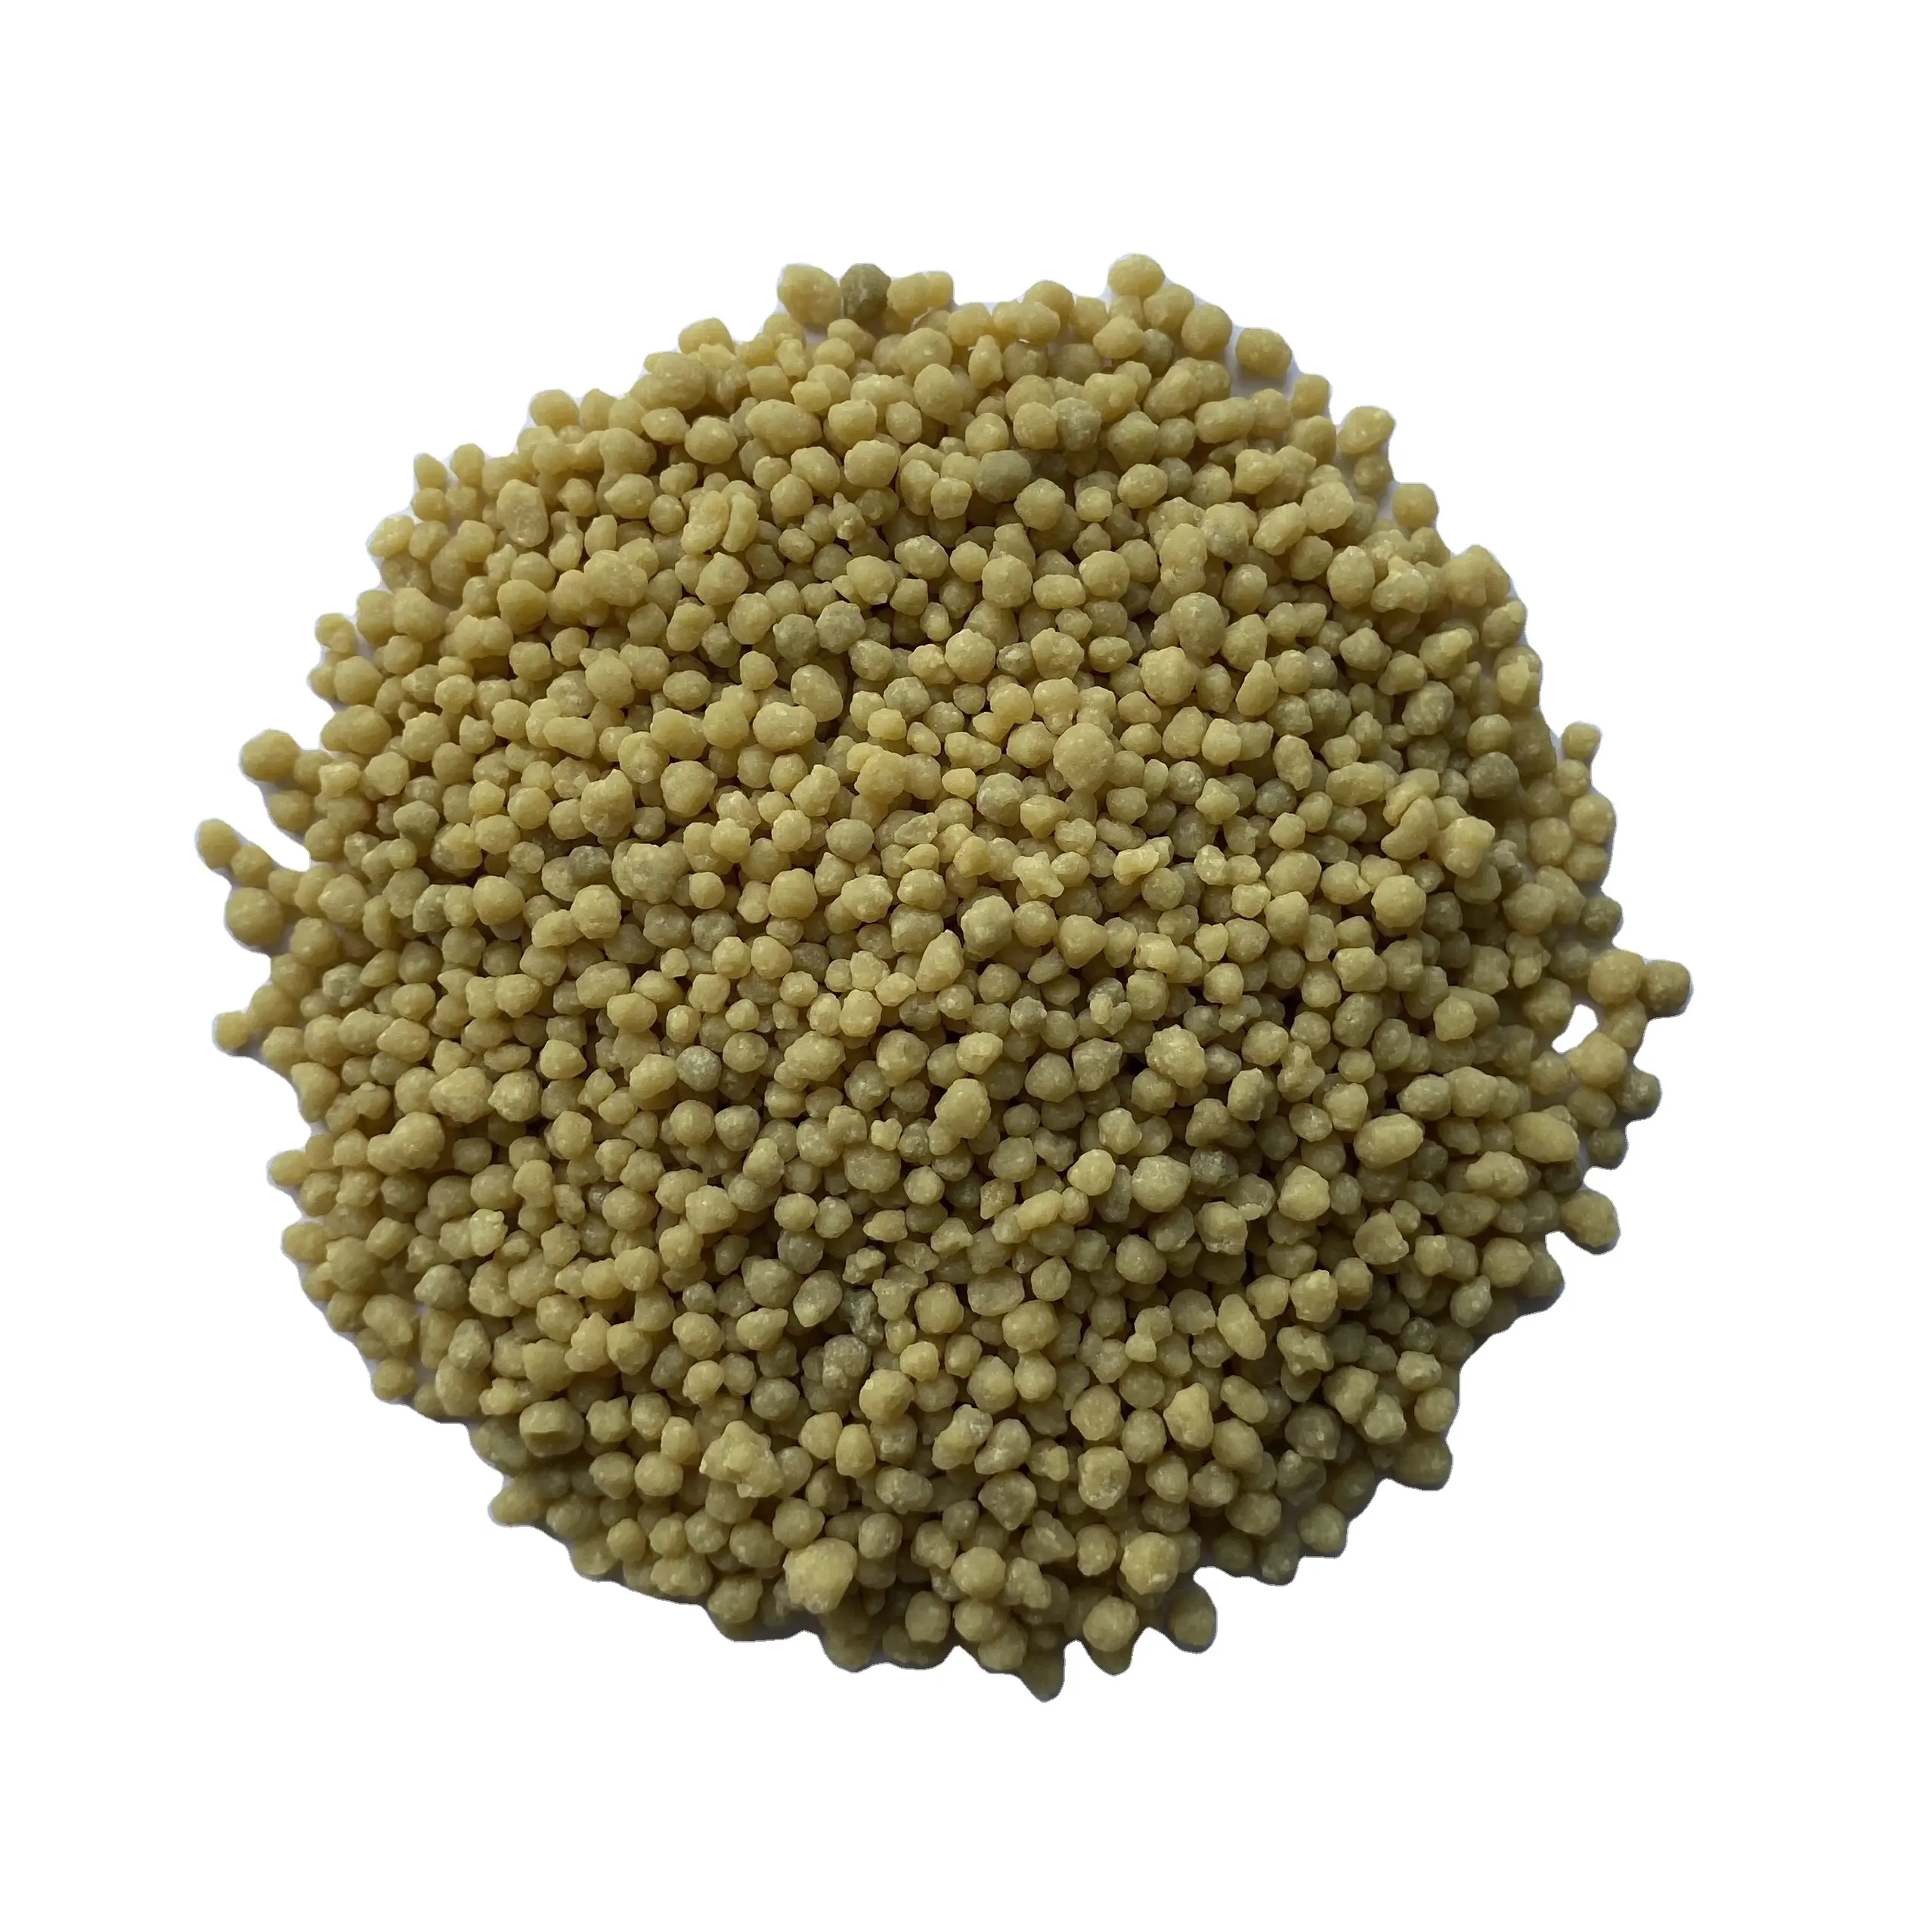 Engrais en Phosphate granulaire DAP Compostable, de bonne qualité et au meilleur prix